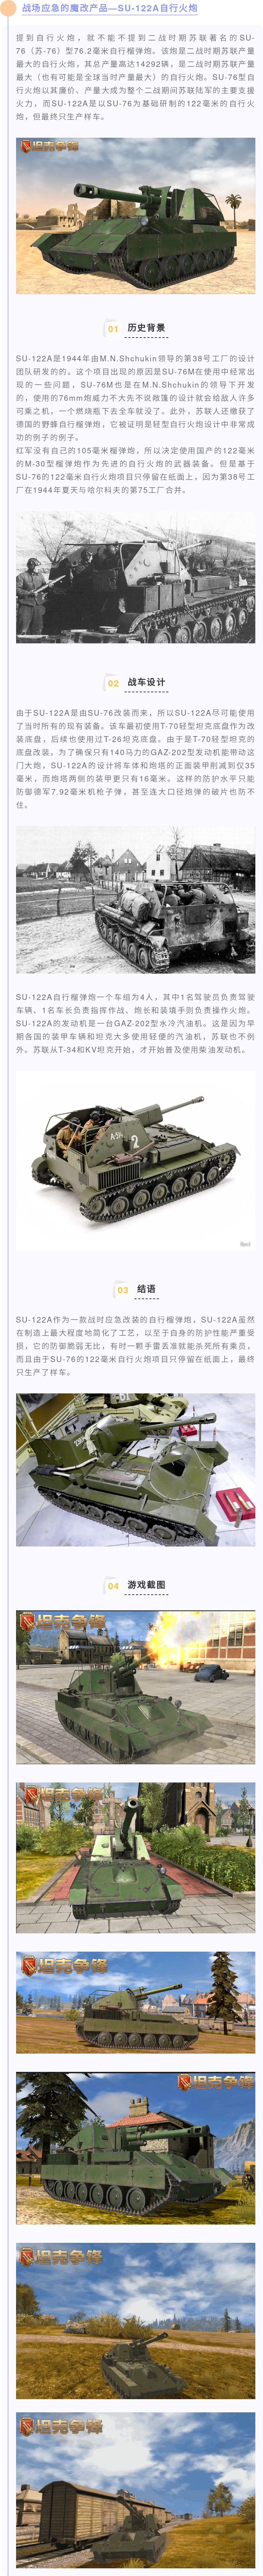 【新车速看】战场应急的魔改产品—SU-122A自行火炮